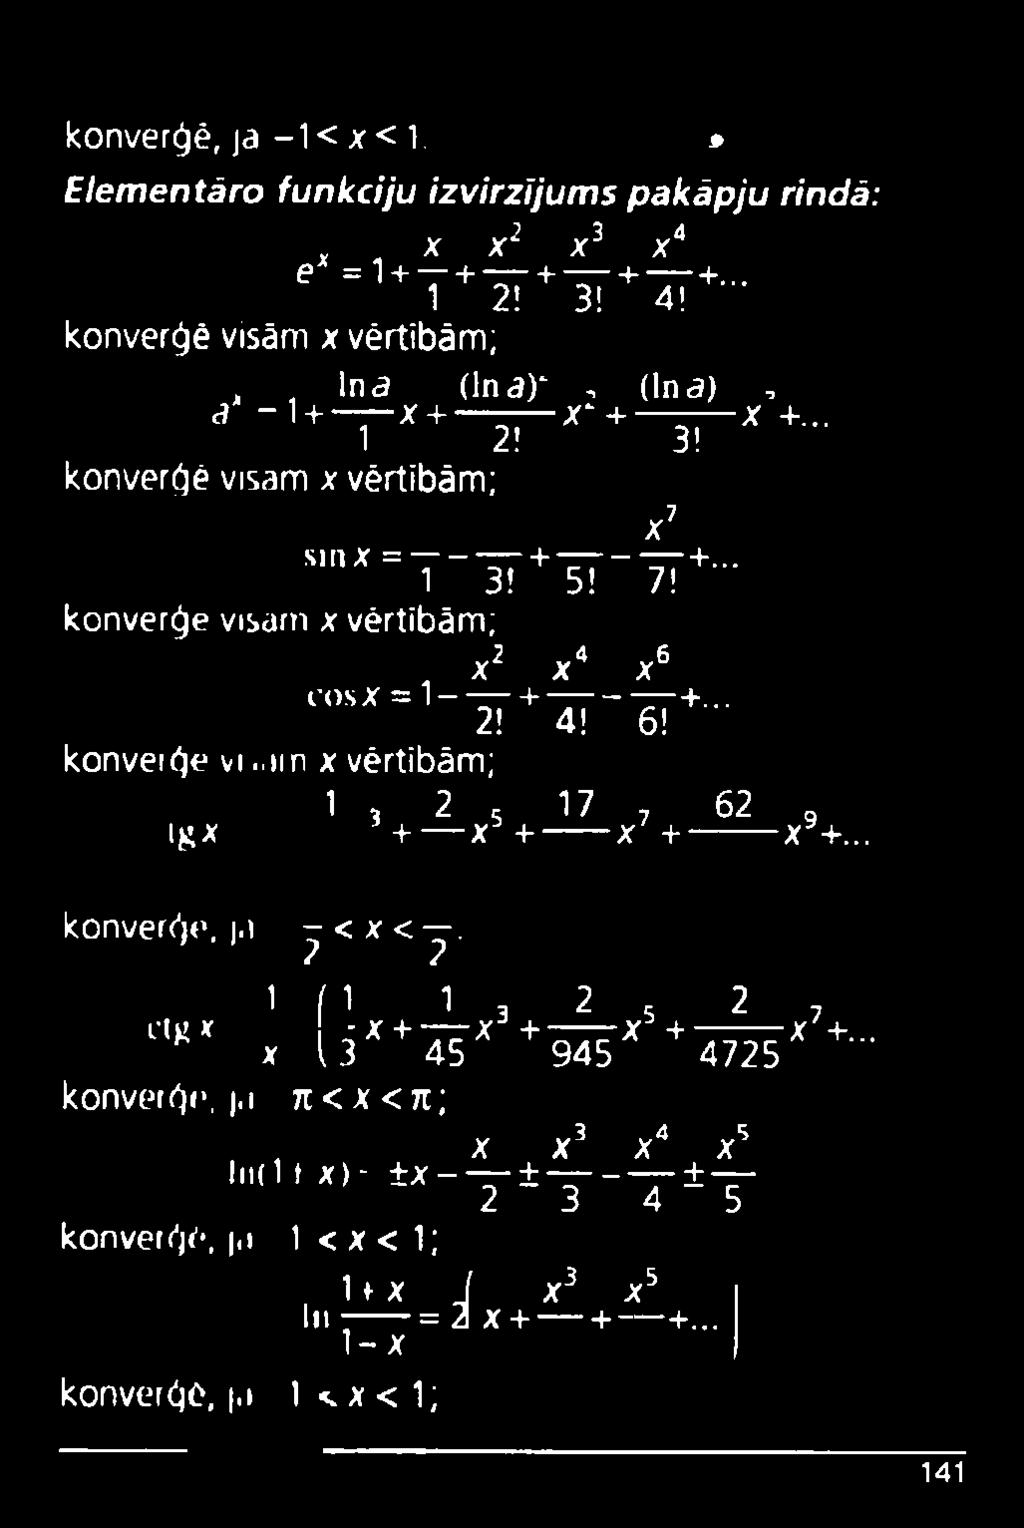 im x vērtībām; x7 sm x = ------+ ----------- +... 1 3! 5! 7! konverģe visam x vērtībām; x2 x4 x6 COSX = 1 - +---- +... 2! 4! 6! konverģe vi..un x vērtībām; 1, 2 5 17 7 62 9 lg x + _ x + _, + x.